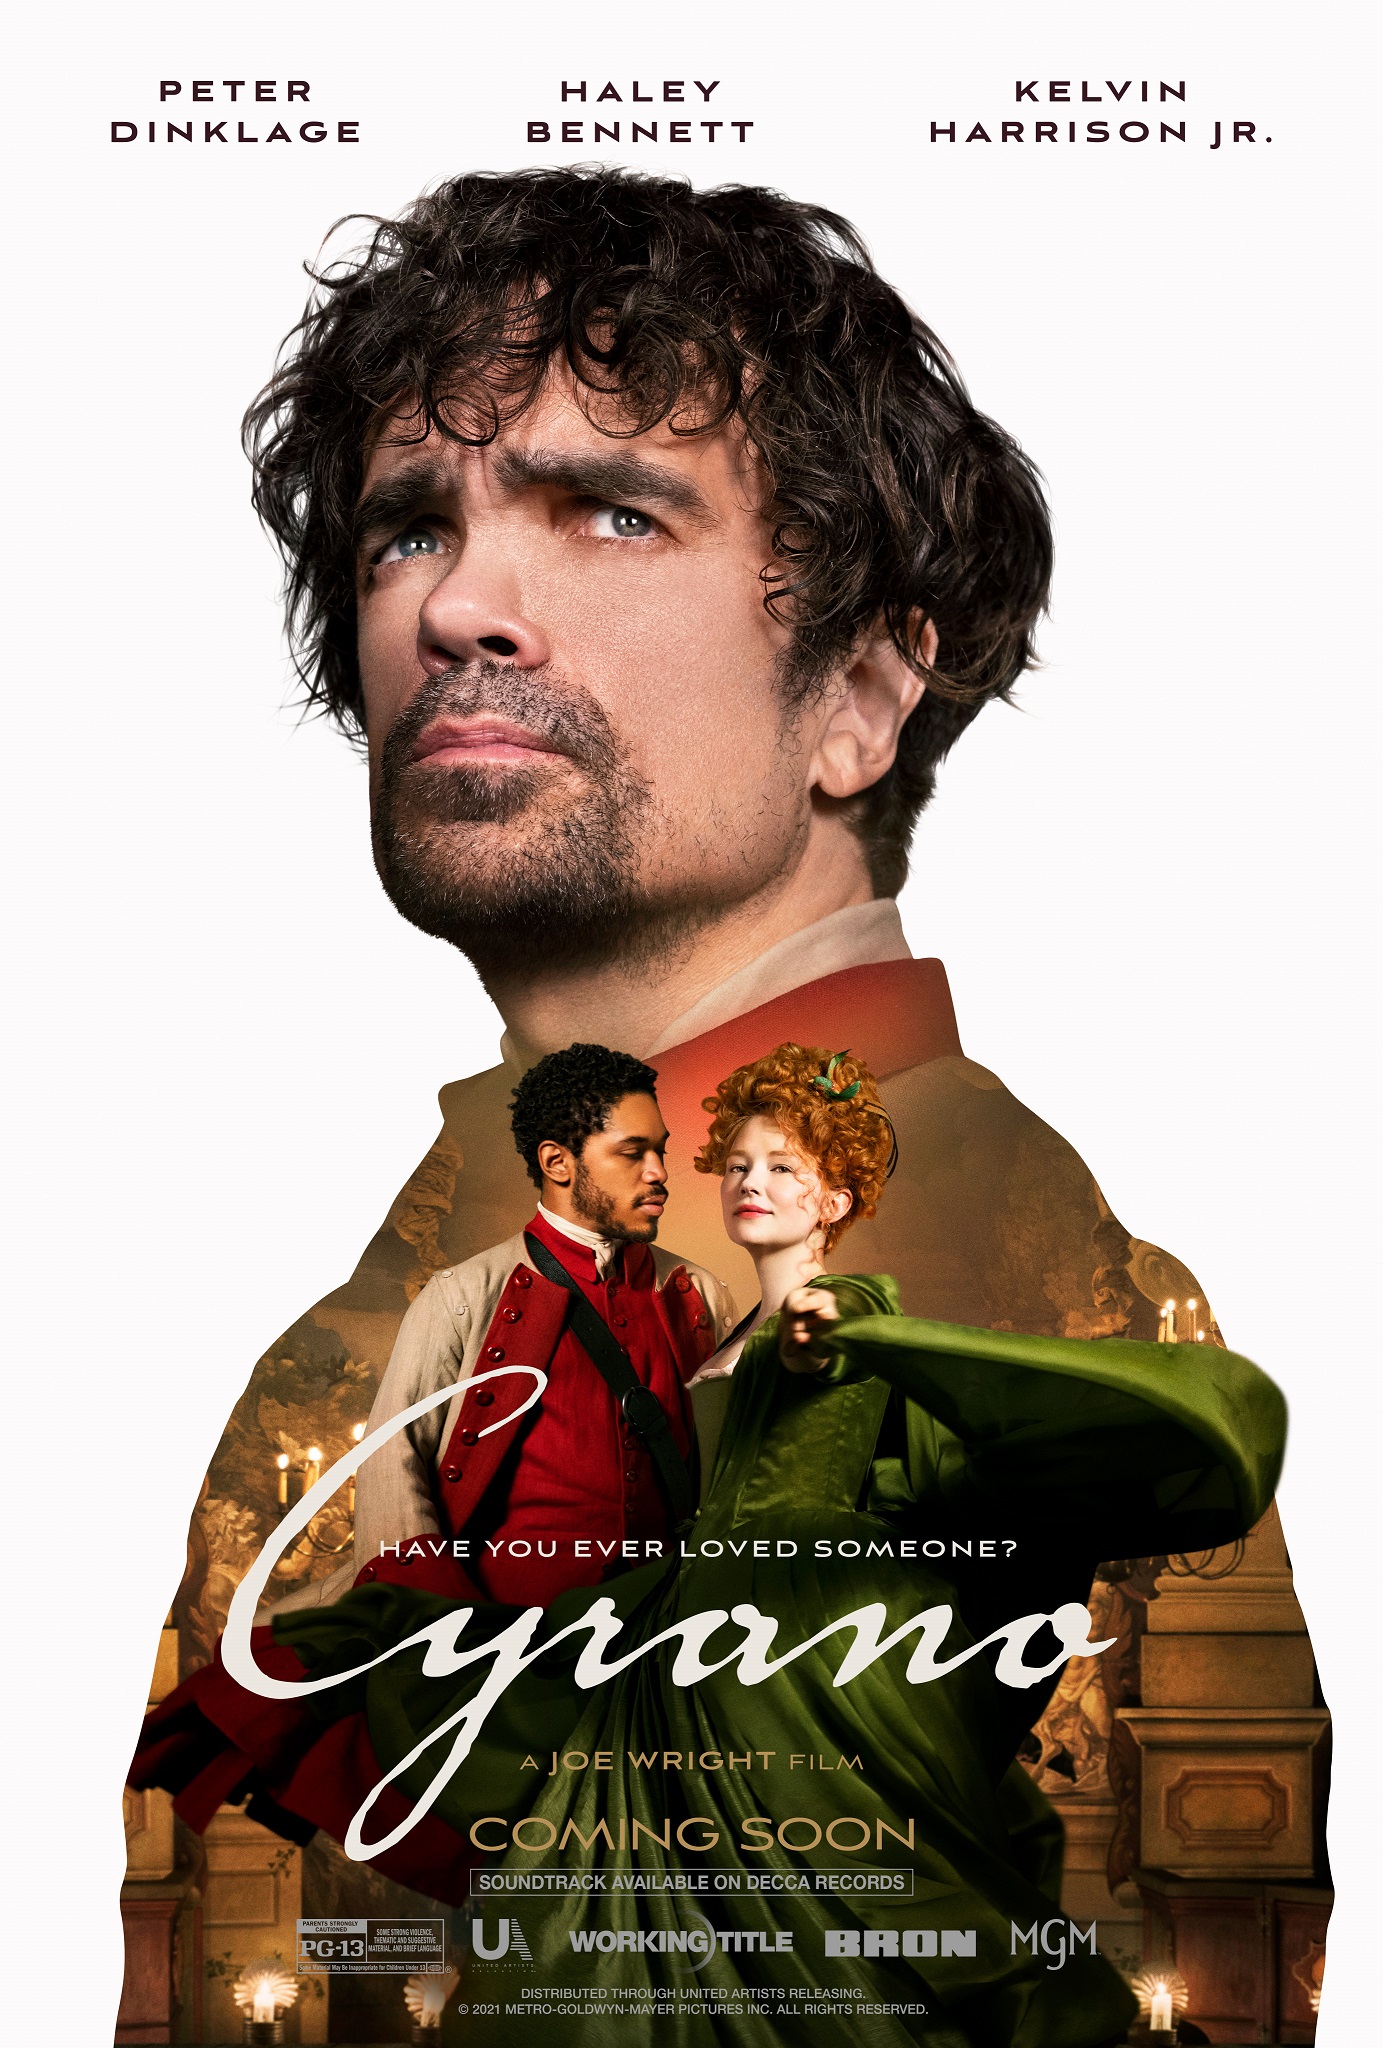 Cyrano - Movie Review